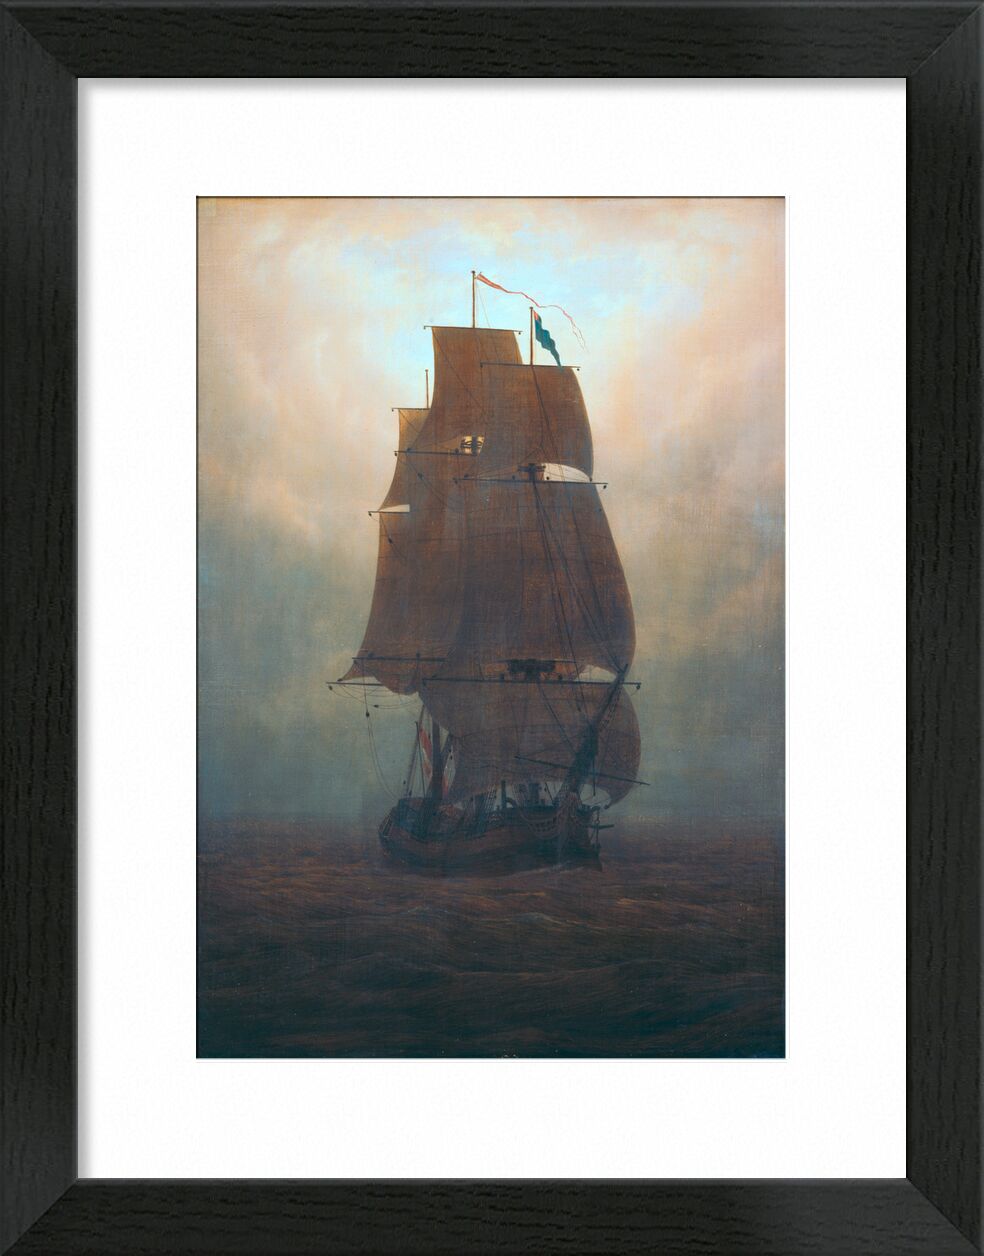 Segelschiff im Nebel von Bildende Kunst, Prodi Art, Friedrich, Caspar David Friedrich, Boot, Meer, yacht, Nebel, Nacht, Sonne